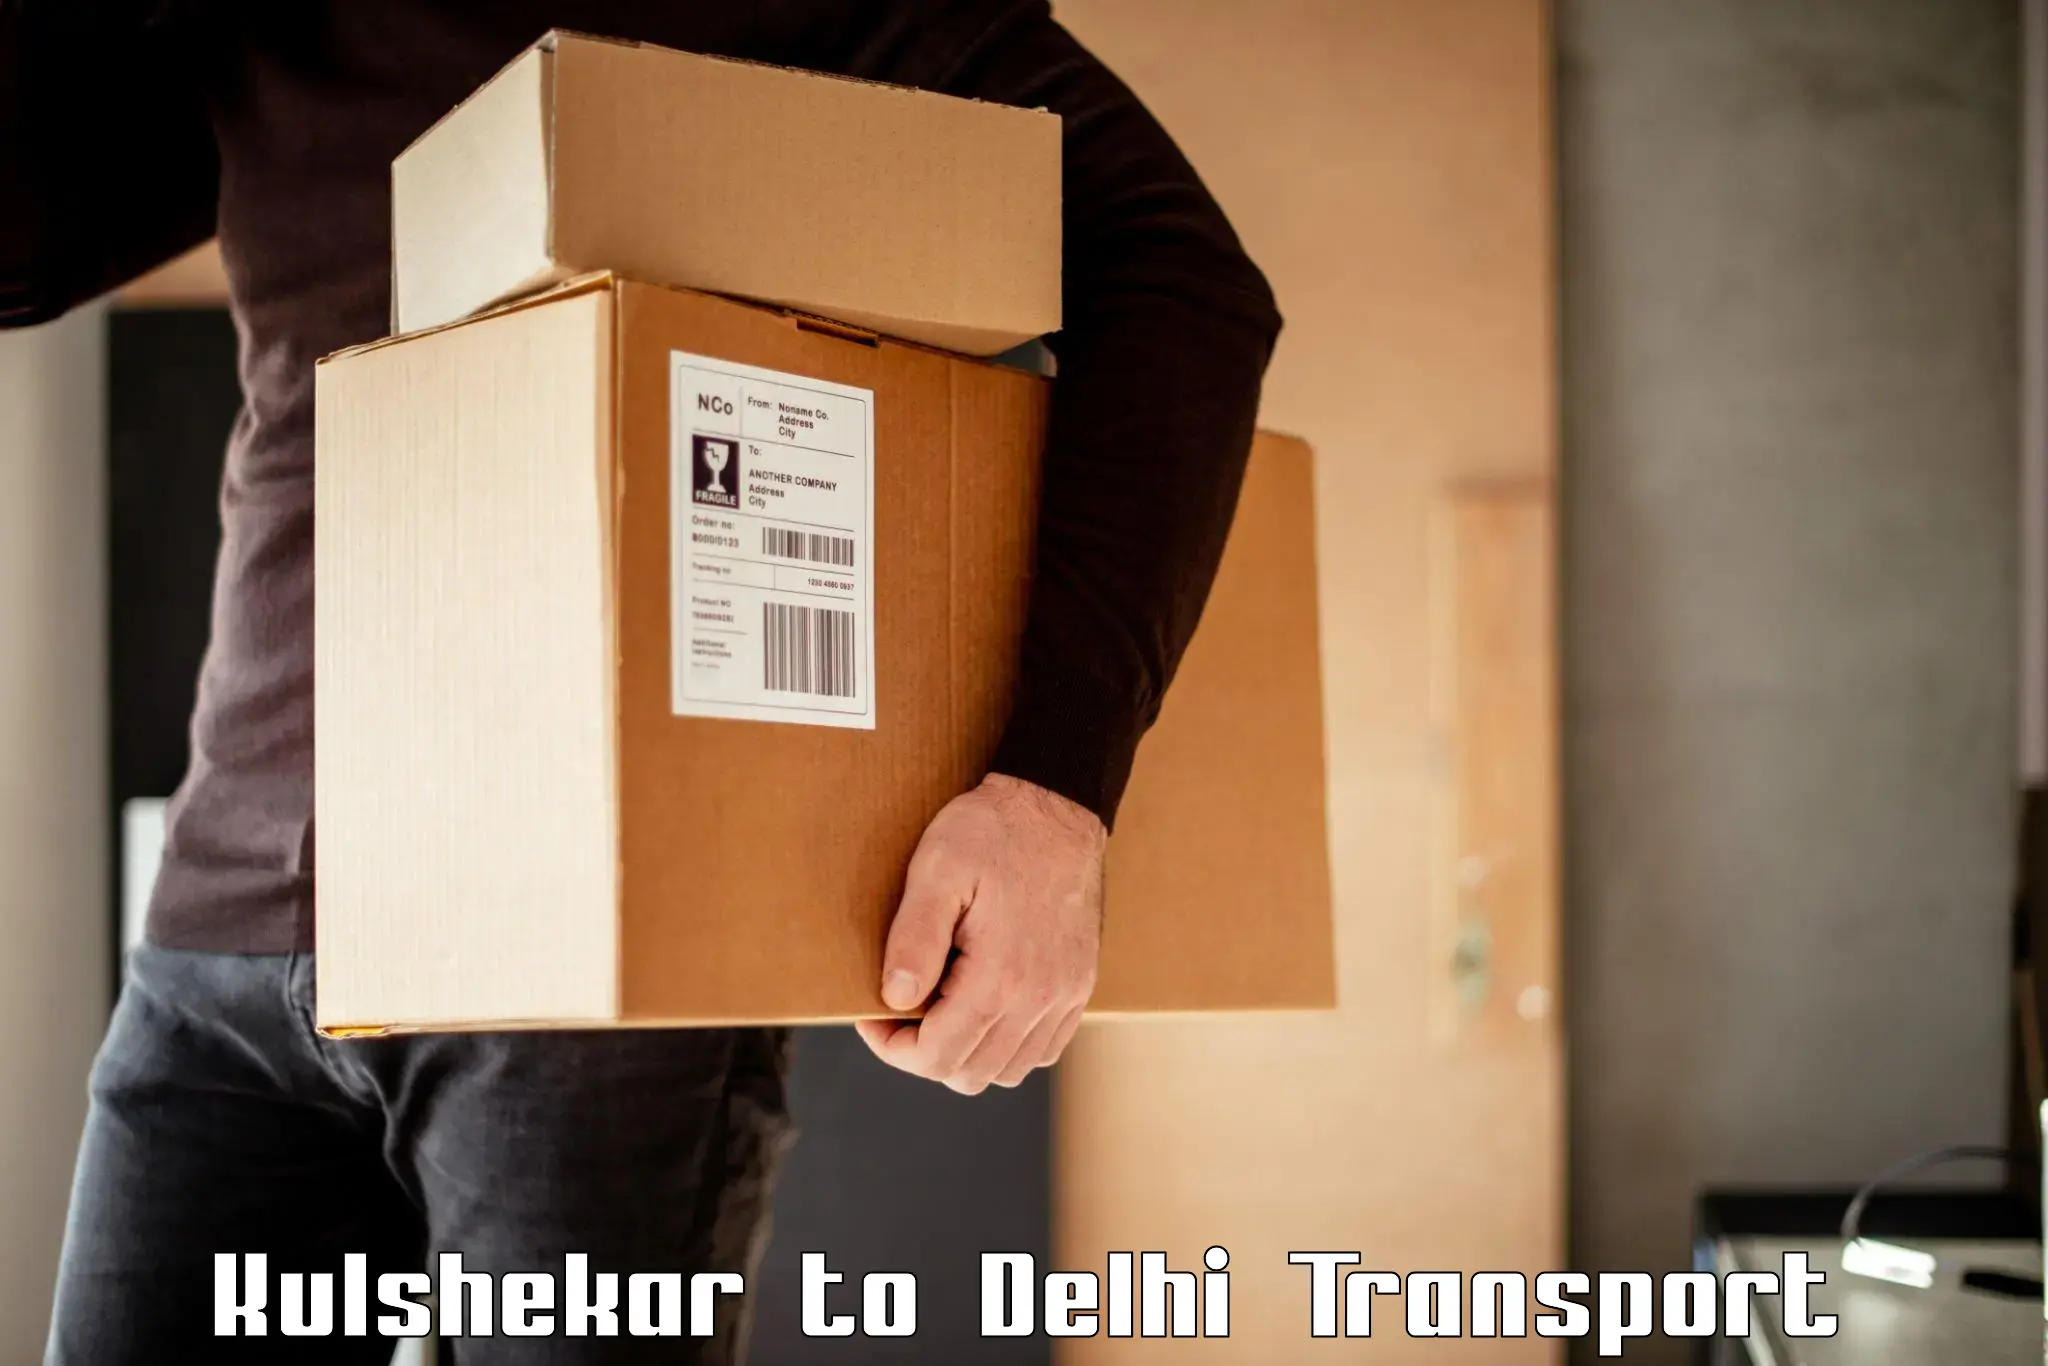 Nearest transport service Kulshekar to East Delhi